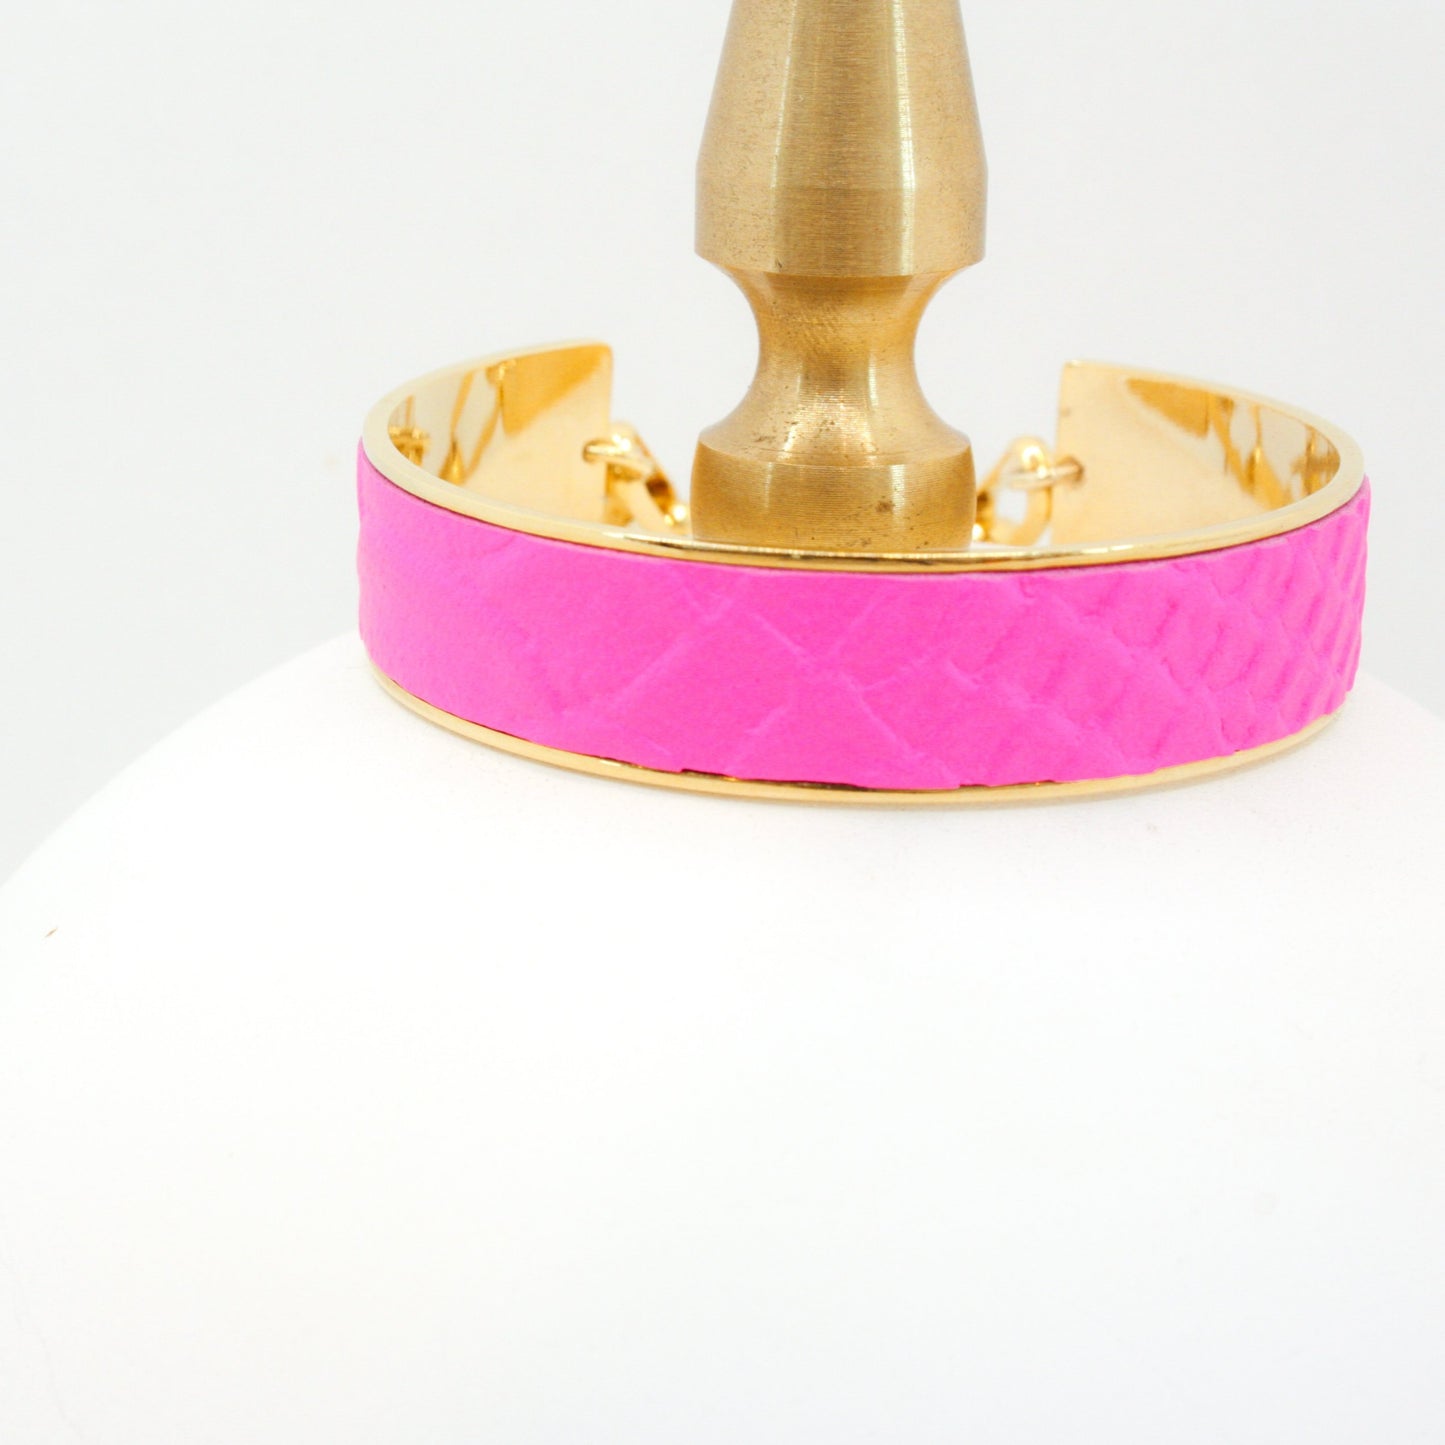 Bijoux Leather & Chain Cuff Bracelet : Neon Pink (1/2")